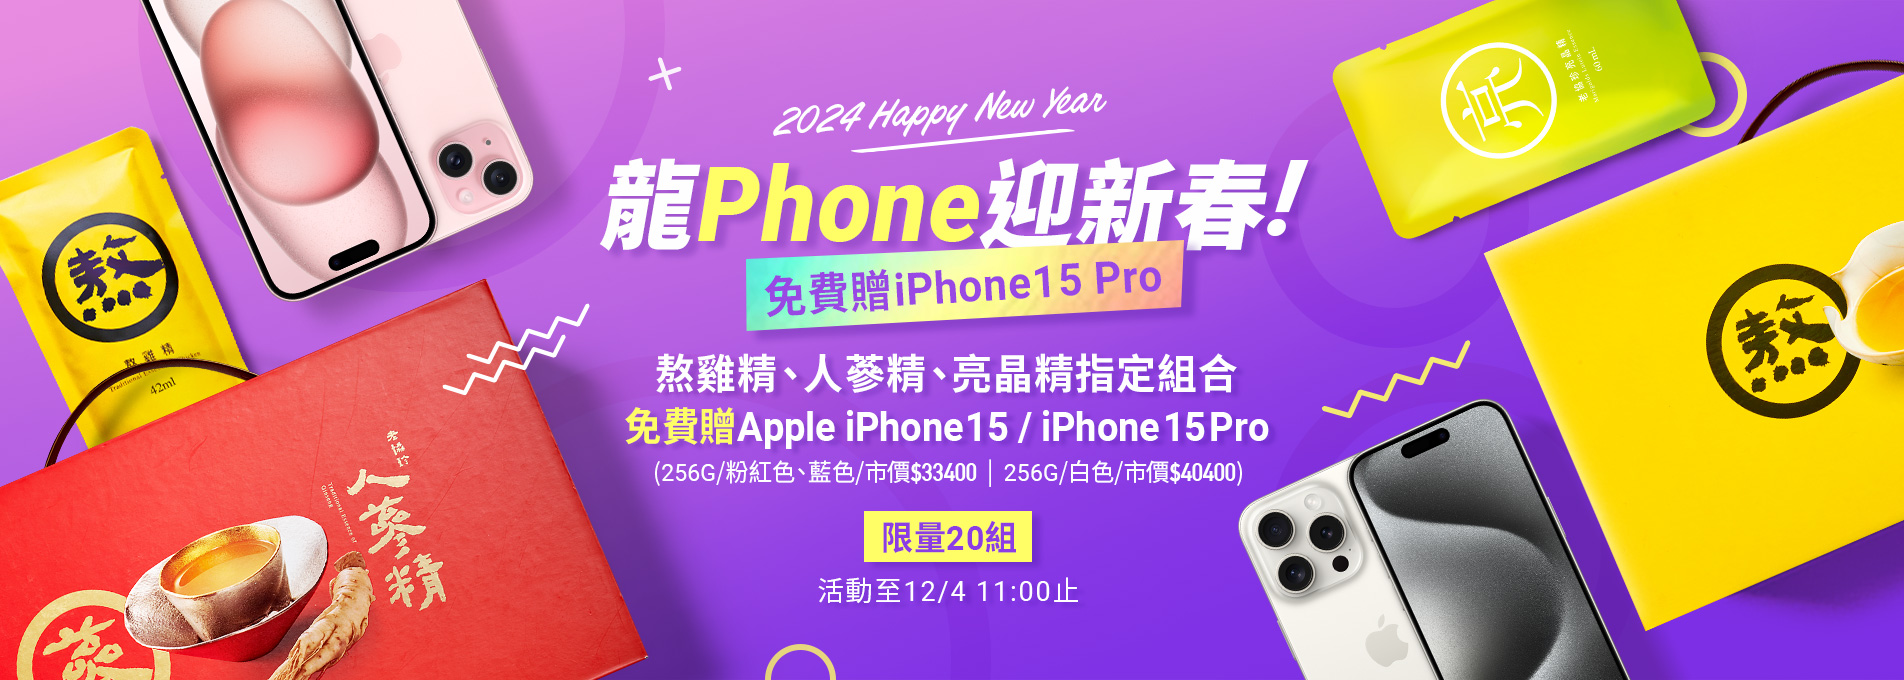 熬雞精、人蔘精、亮晶精 免費贈Apple iPhone 15